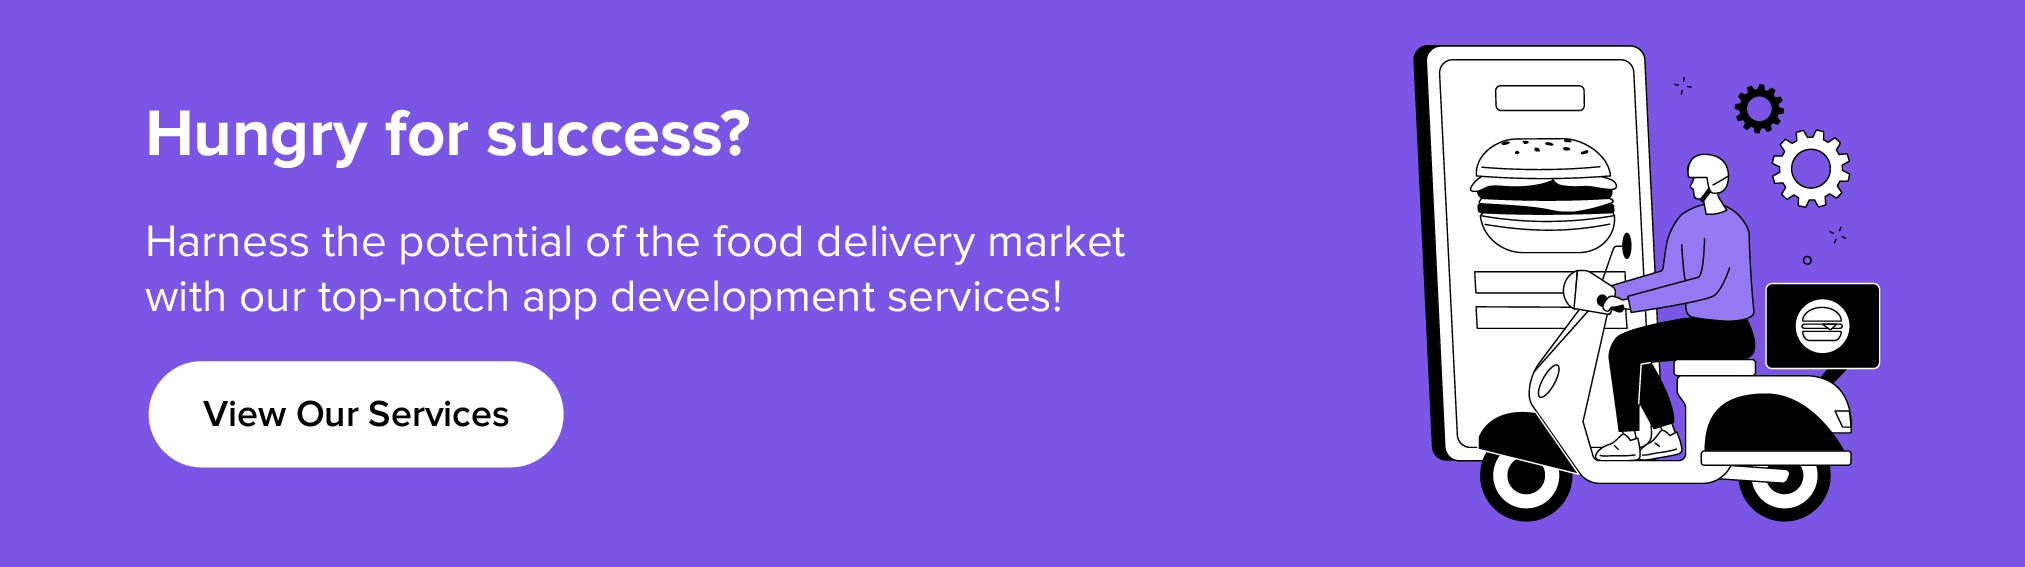 Nutzen Sie unsere Dienstleistungen, um das Potenzial des Marktes für Lebensmittellieferungen auszuschöpfen.